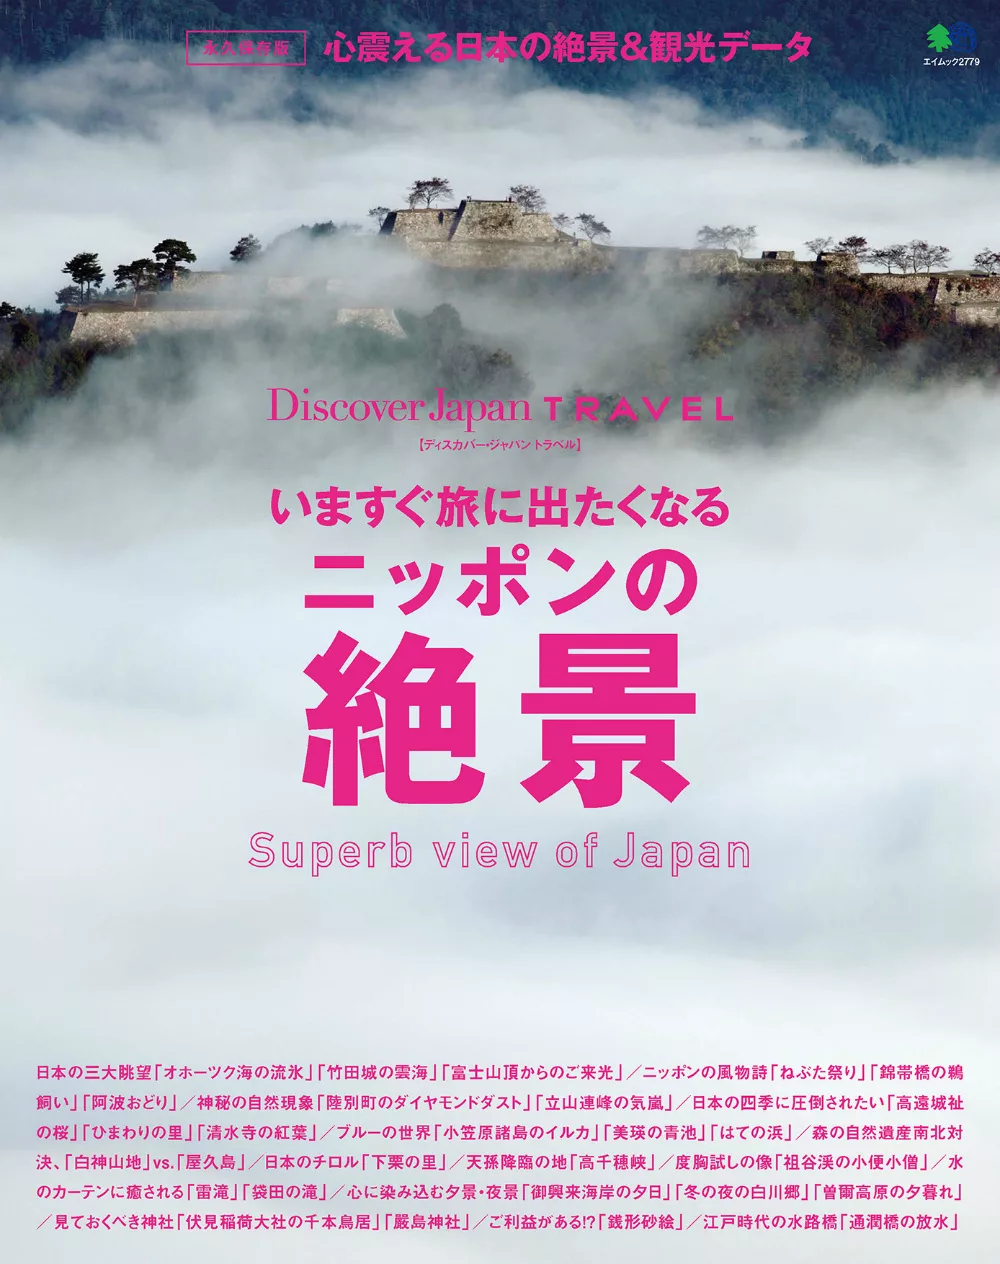 (日文雜誌)Discover Japan TRAVEL 現在就想去旅行的日本絕景 (電子雜誌)